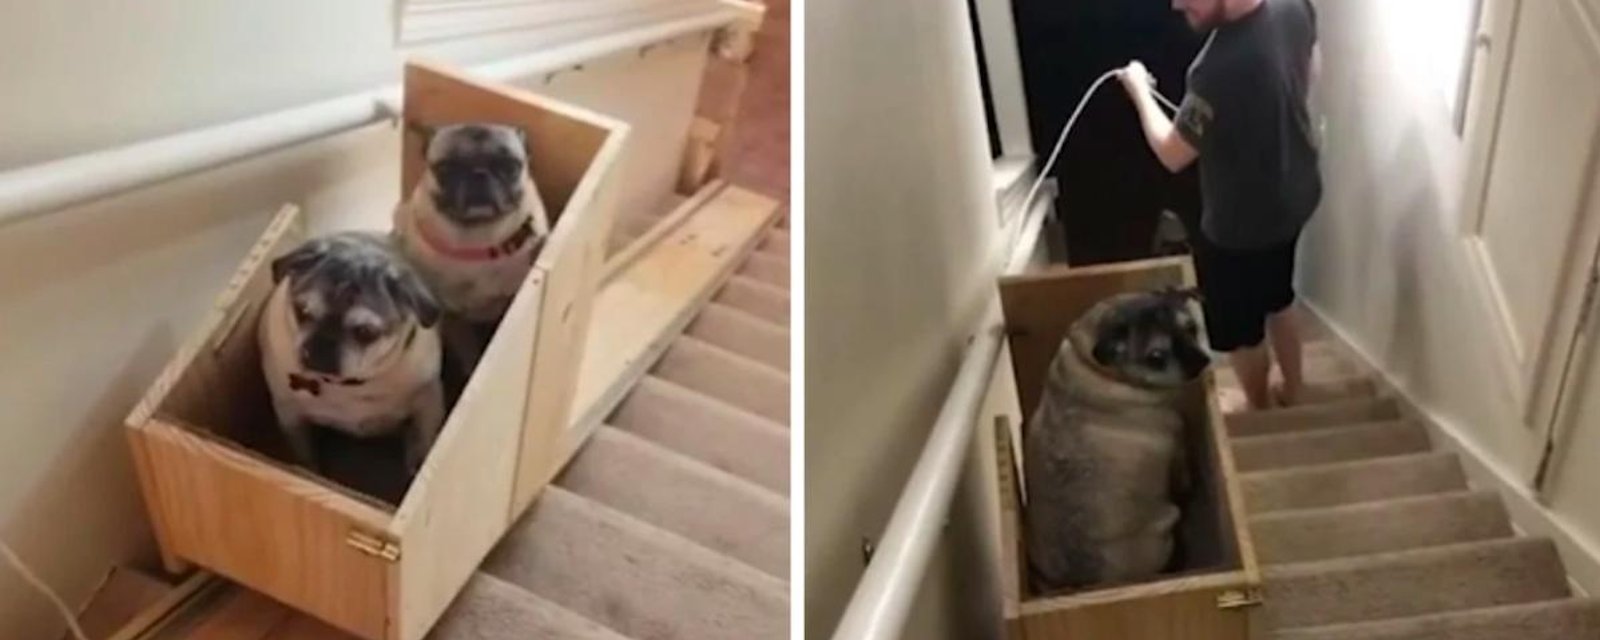 Elle construit un système pour aider ces chiens âgés dans les escaliers